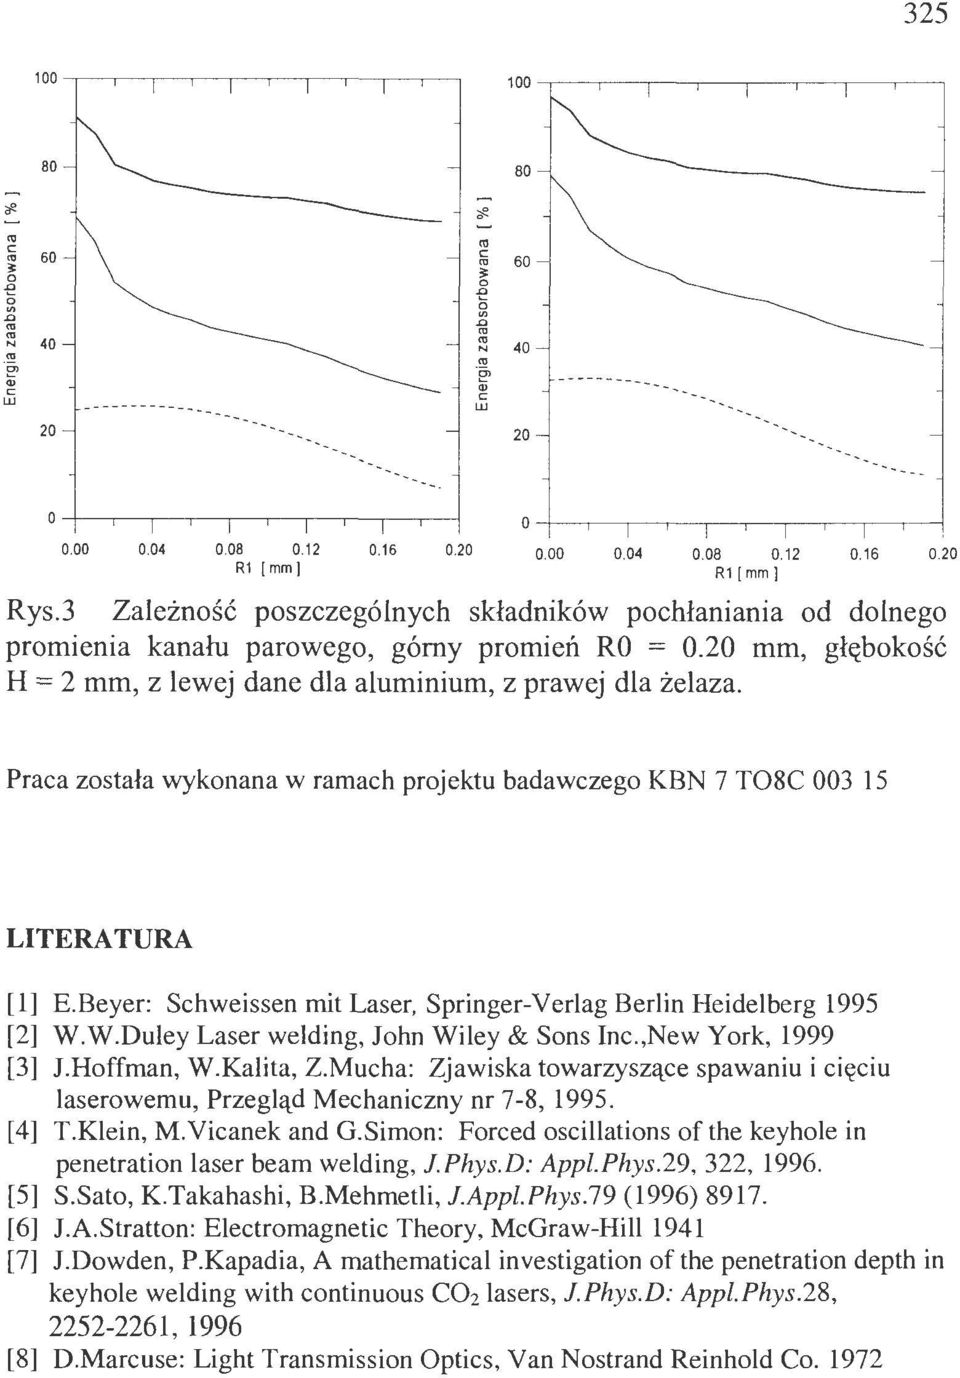 Praa zstała wyknana w ramah prjektu badawzeg KBN 7 T08C 003 15 LITERATURA [l] E.Beyer: Shweissen mit Laser, Springer-Verlag Berlin Heidelberg 1995 [2] W.W.Duley Laser welding, Jhn Wiley & Sns In.